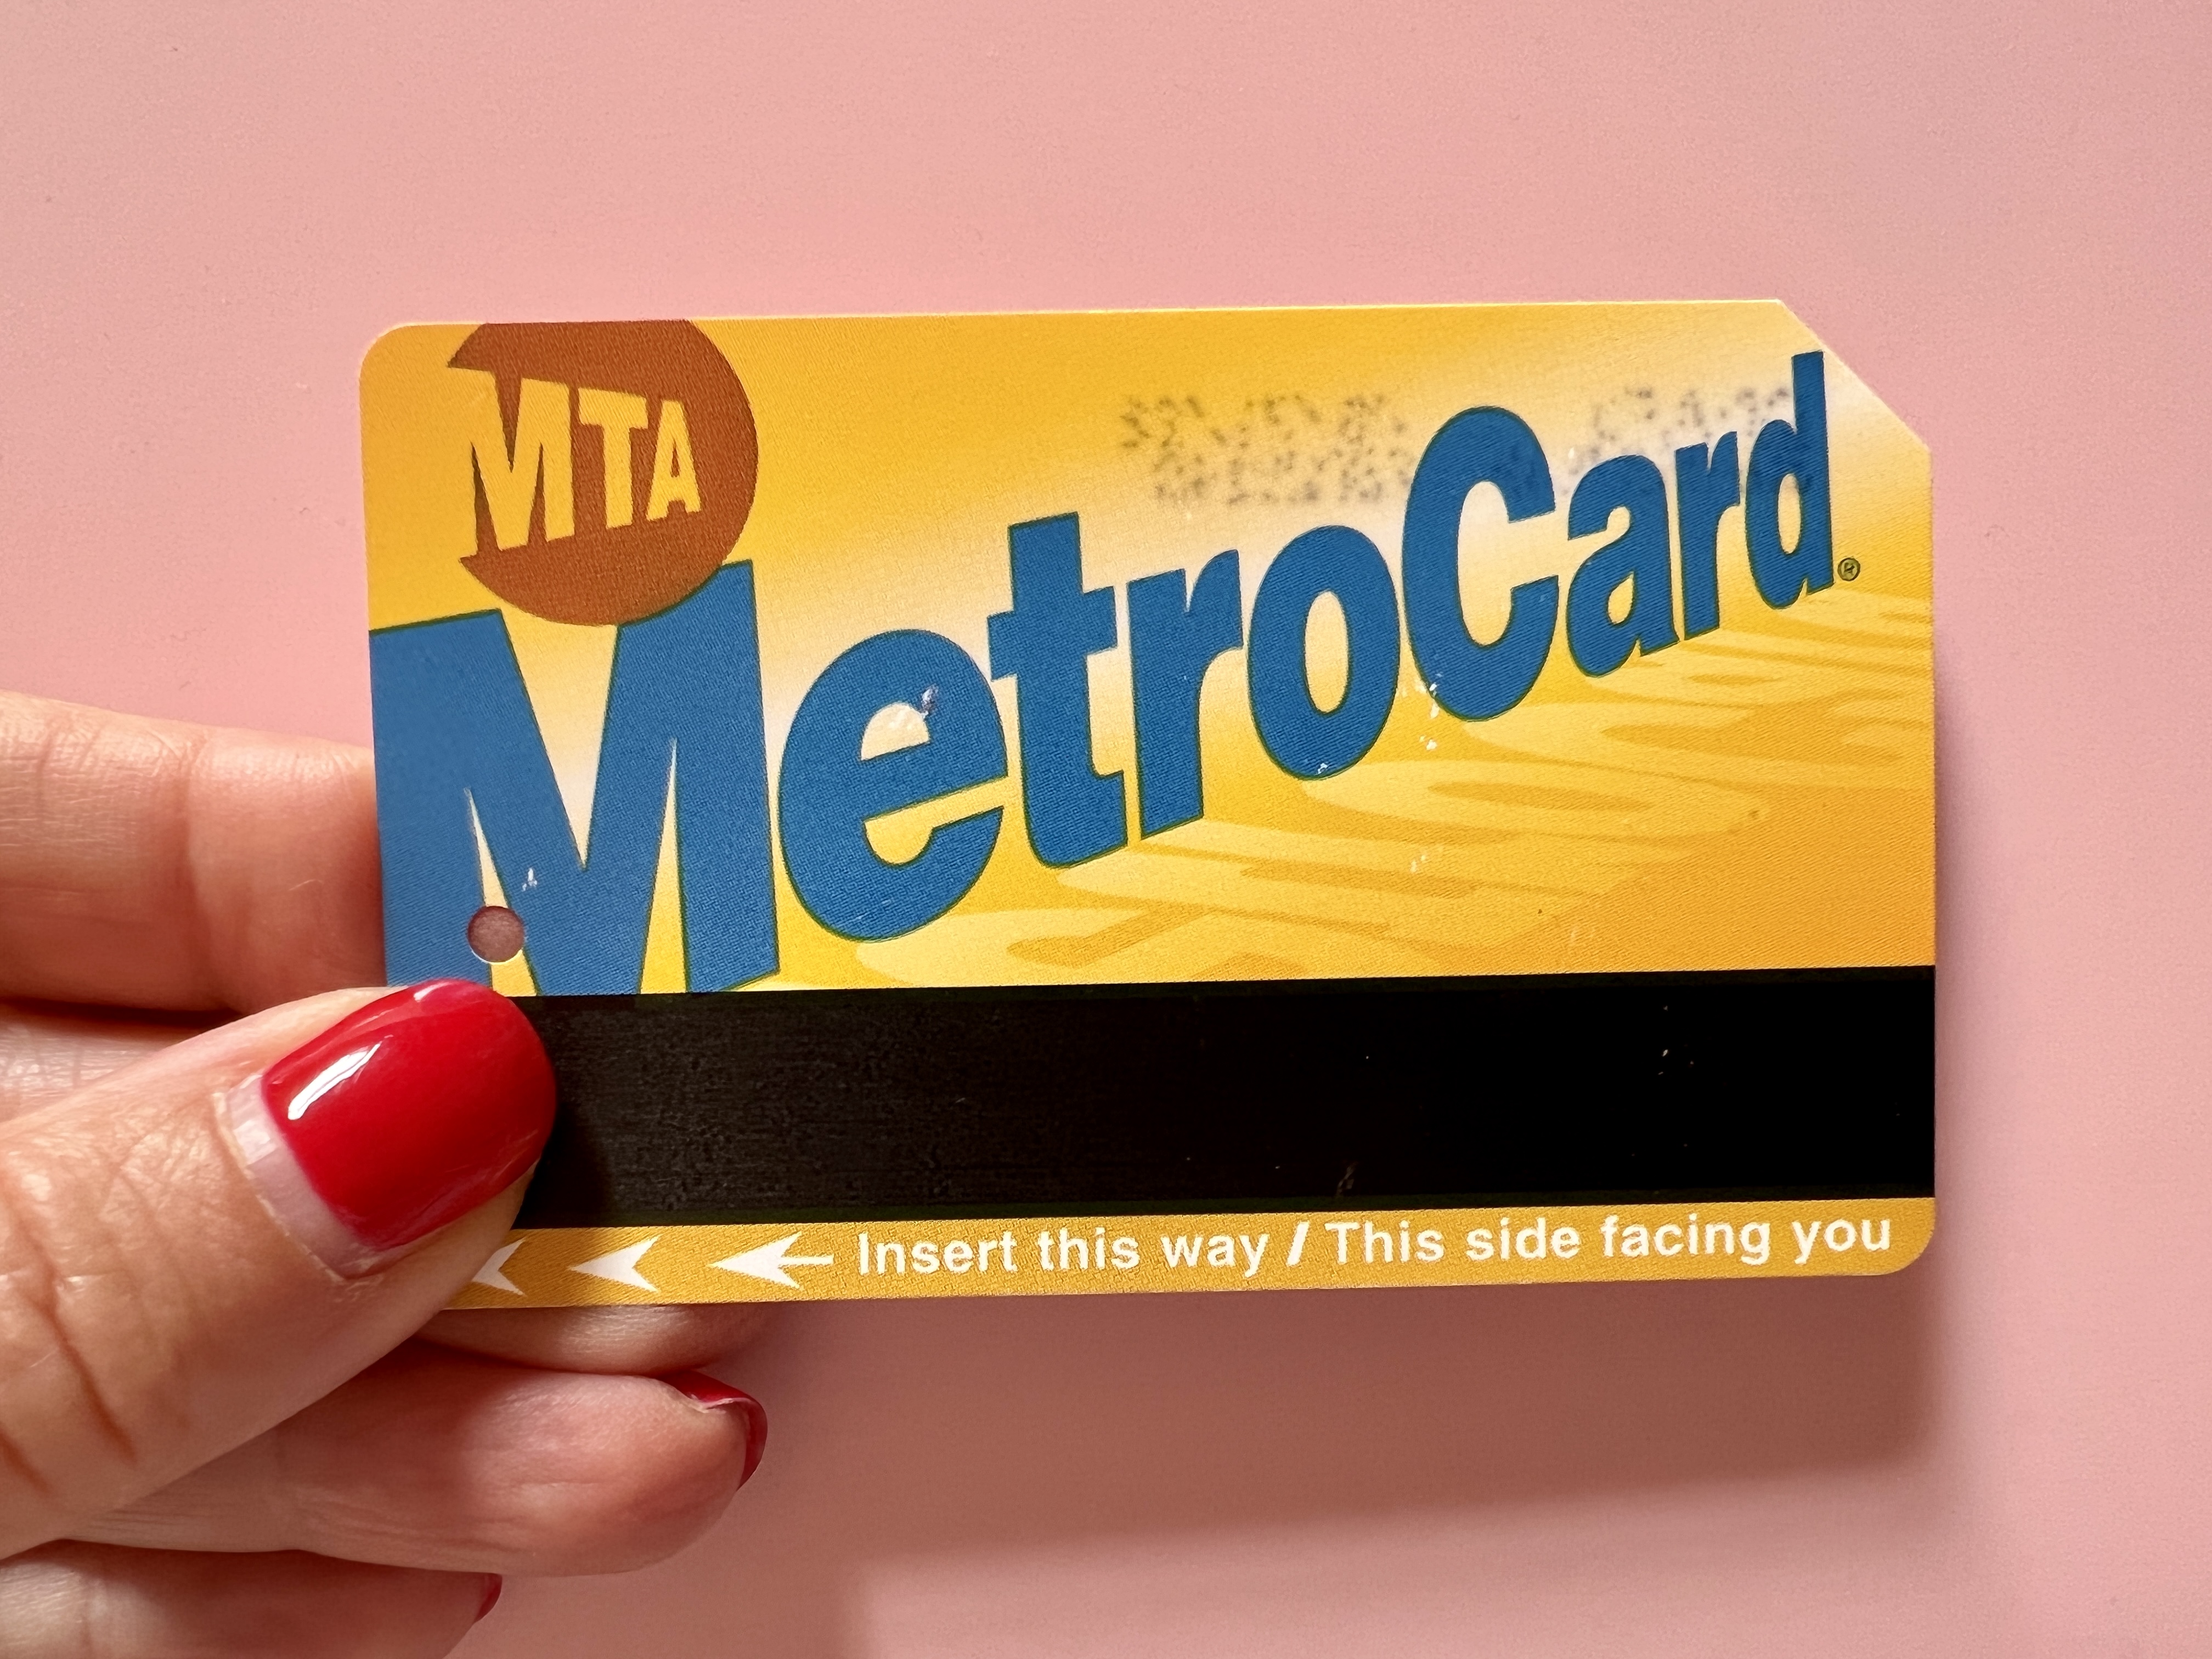 MetroCard New York